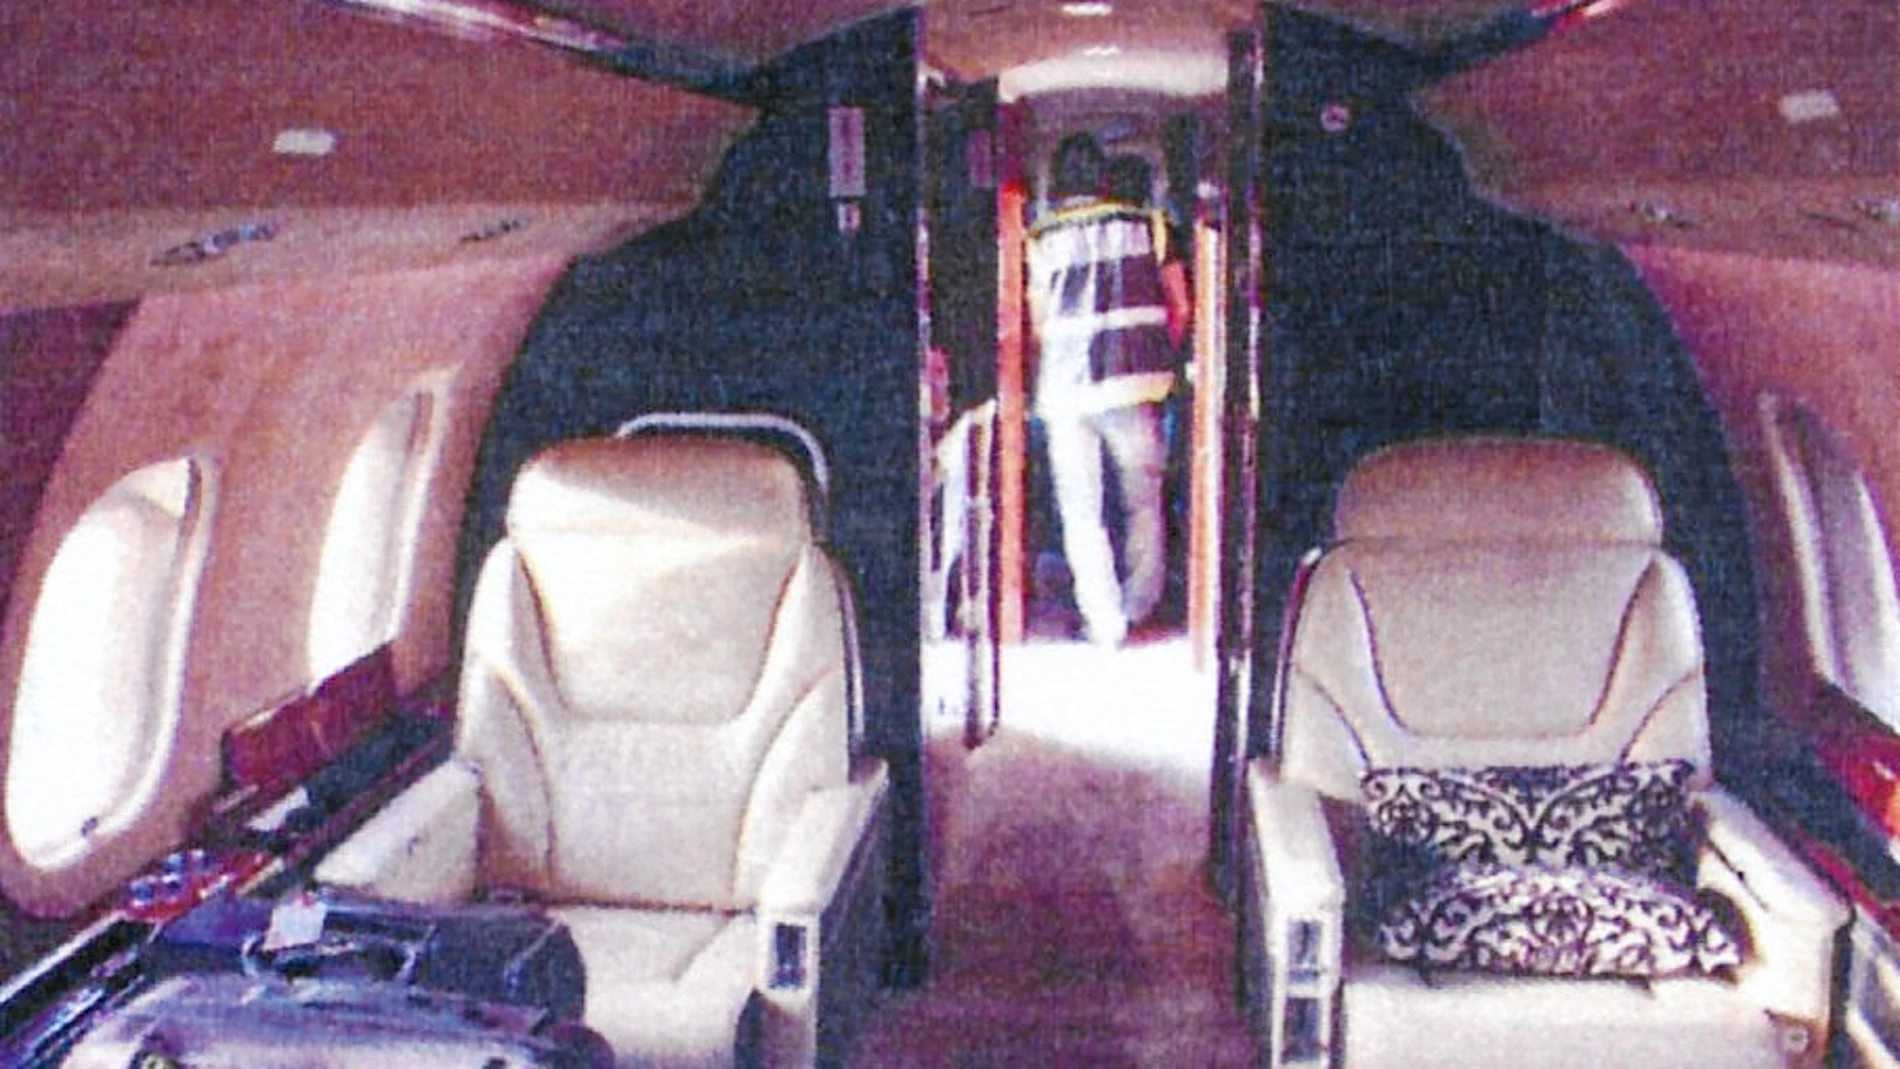 UN JET PRIVADO. Imagen del interior del avión, un lujoso Bombardier Global Express procedente de la localidad venezolana de Valencia